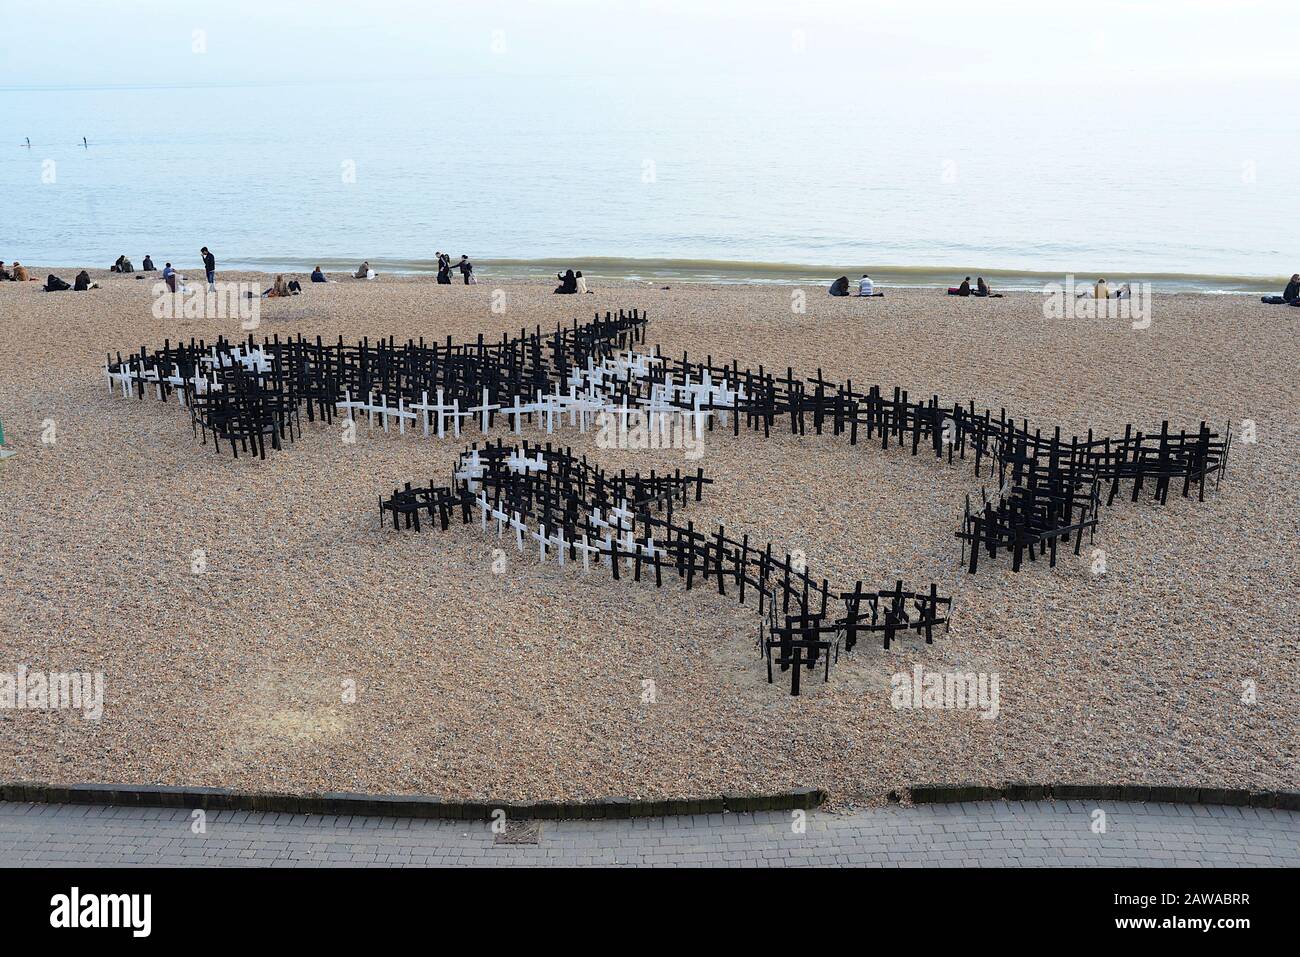 Brighton, Reino Unido, 10 de marzo de 2015. Cientos de estacas de madera pintadas en blanco y negro con forma de cruces están dispuestas en un guijarros en la playa de Brighton en forma de una ballena asesina y es un becerro en esta instalación de arte titulada “Graveyard de ballenas - poniendo espíritus cautivos libres”. La gigantesca pieza de arte, creada para coincidir con el festival WhaleFest de 2015, contó con 1,500 cruces. Cada cruz representa una ballena o un delfín que ha muerto en cautiverio. Foto de stock